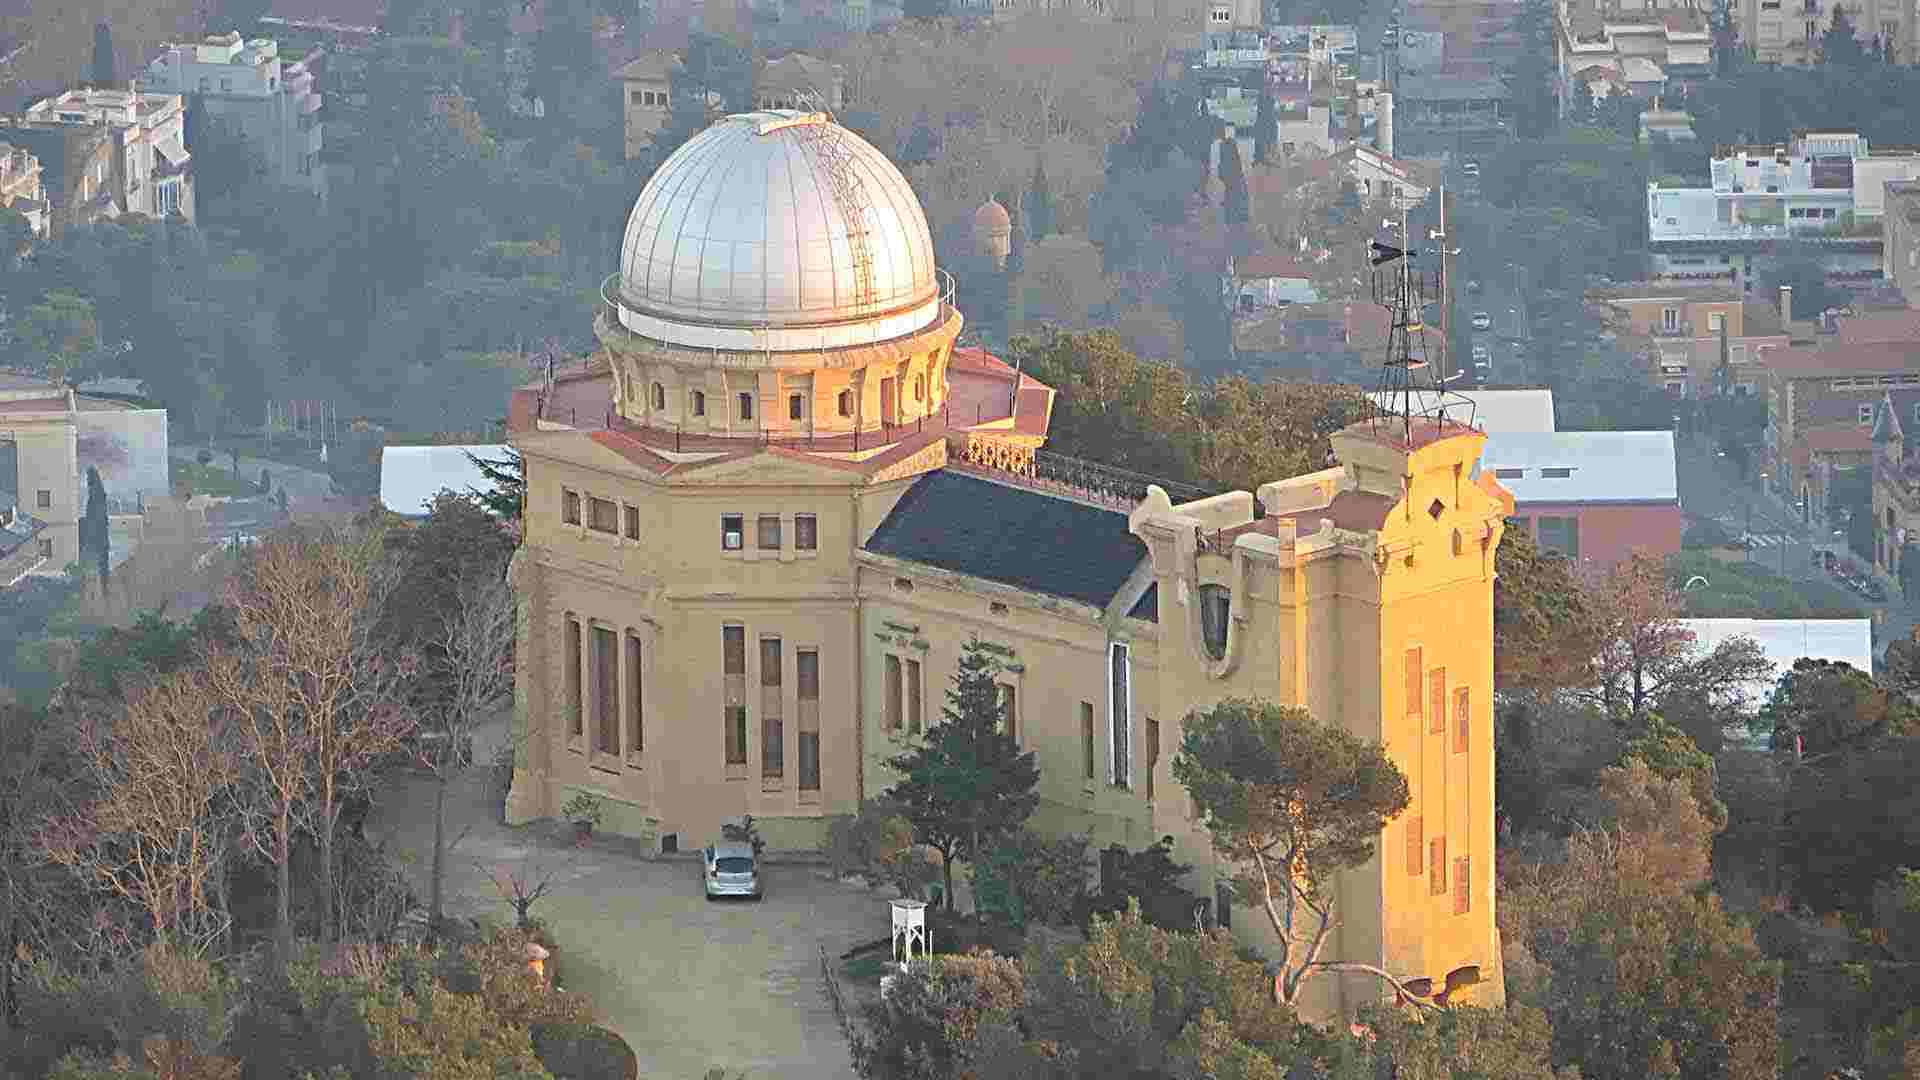 ¿Sabías que uno de los observatorios astronómicos más antiguos del mundo está en Barcelona y es visitable?